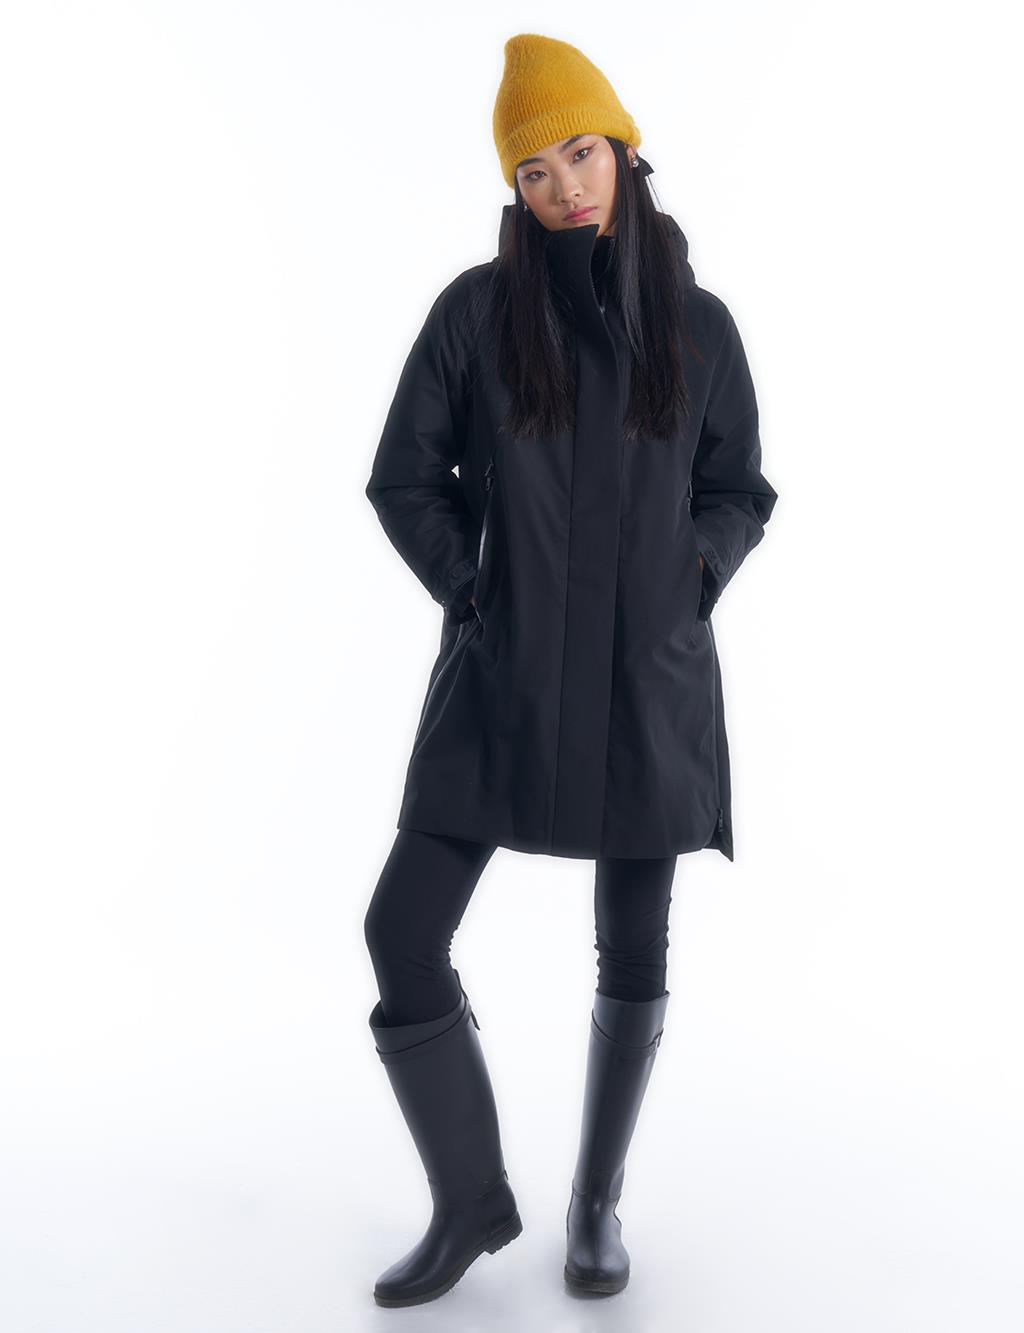 3in1 Multipe Use Coat I Raincoat I Jacket in Black